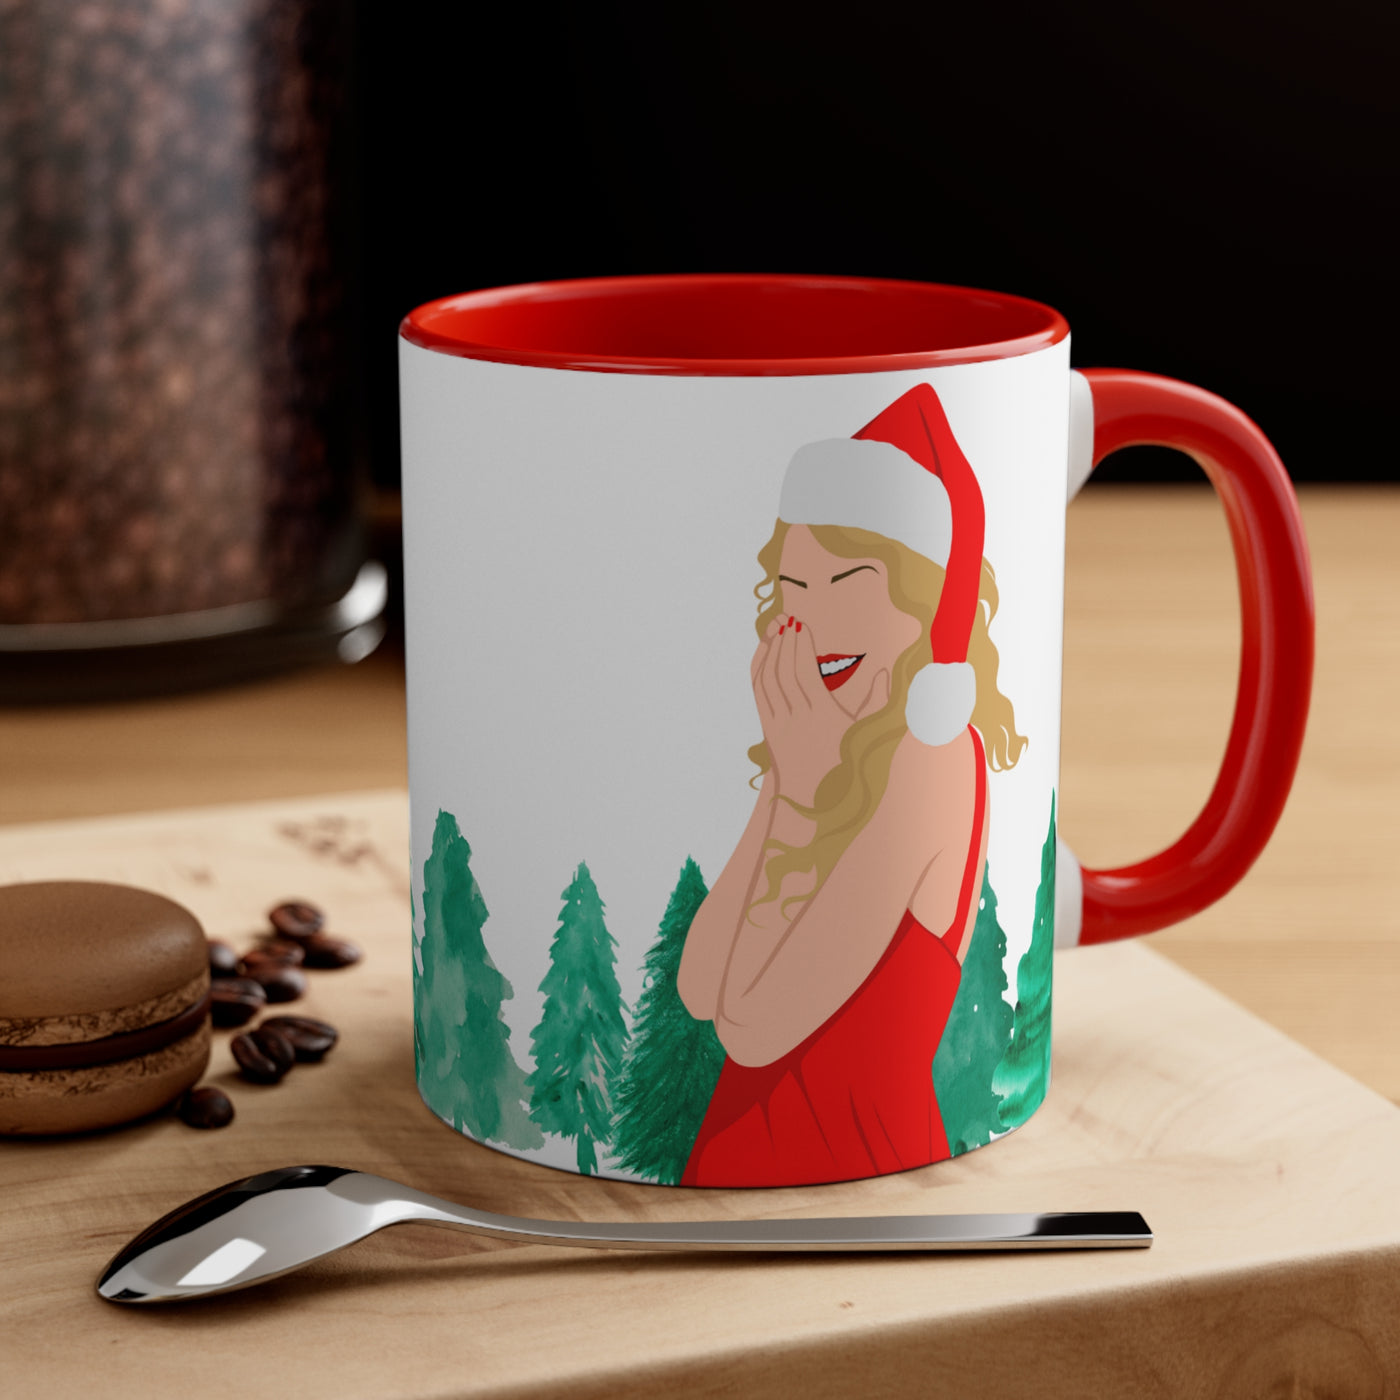 The Taylor - Christmas Tree Farm Mug